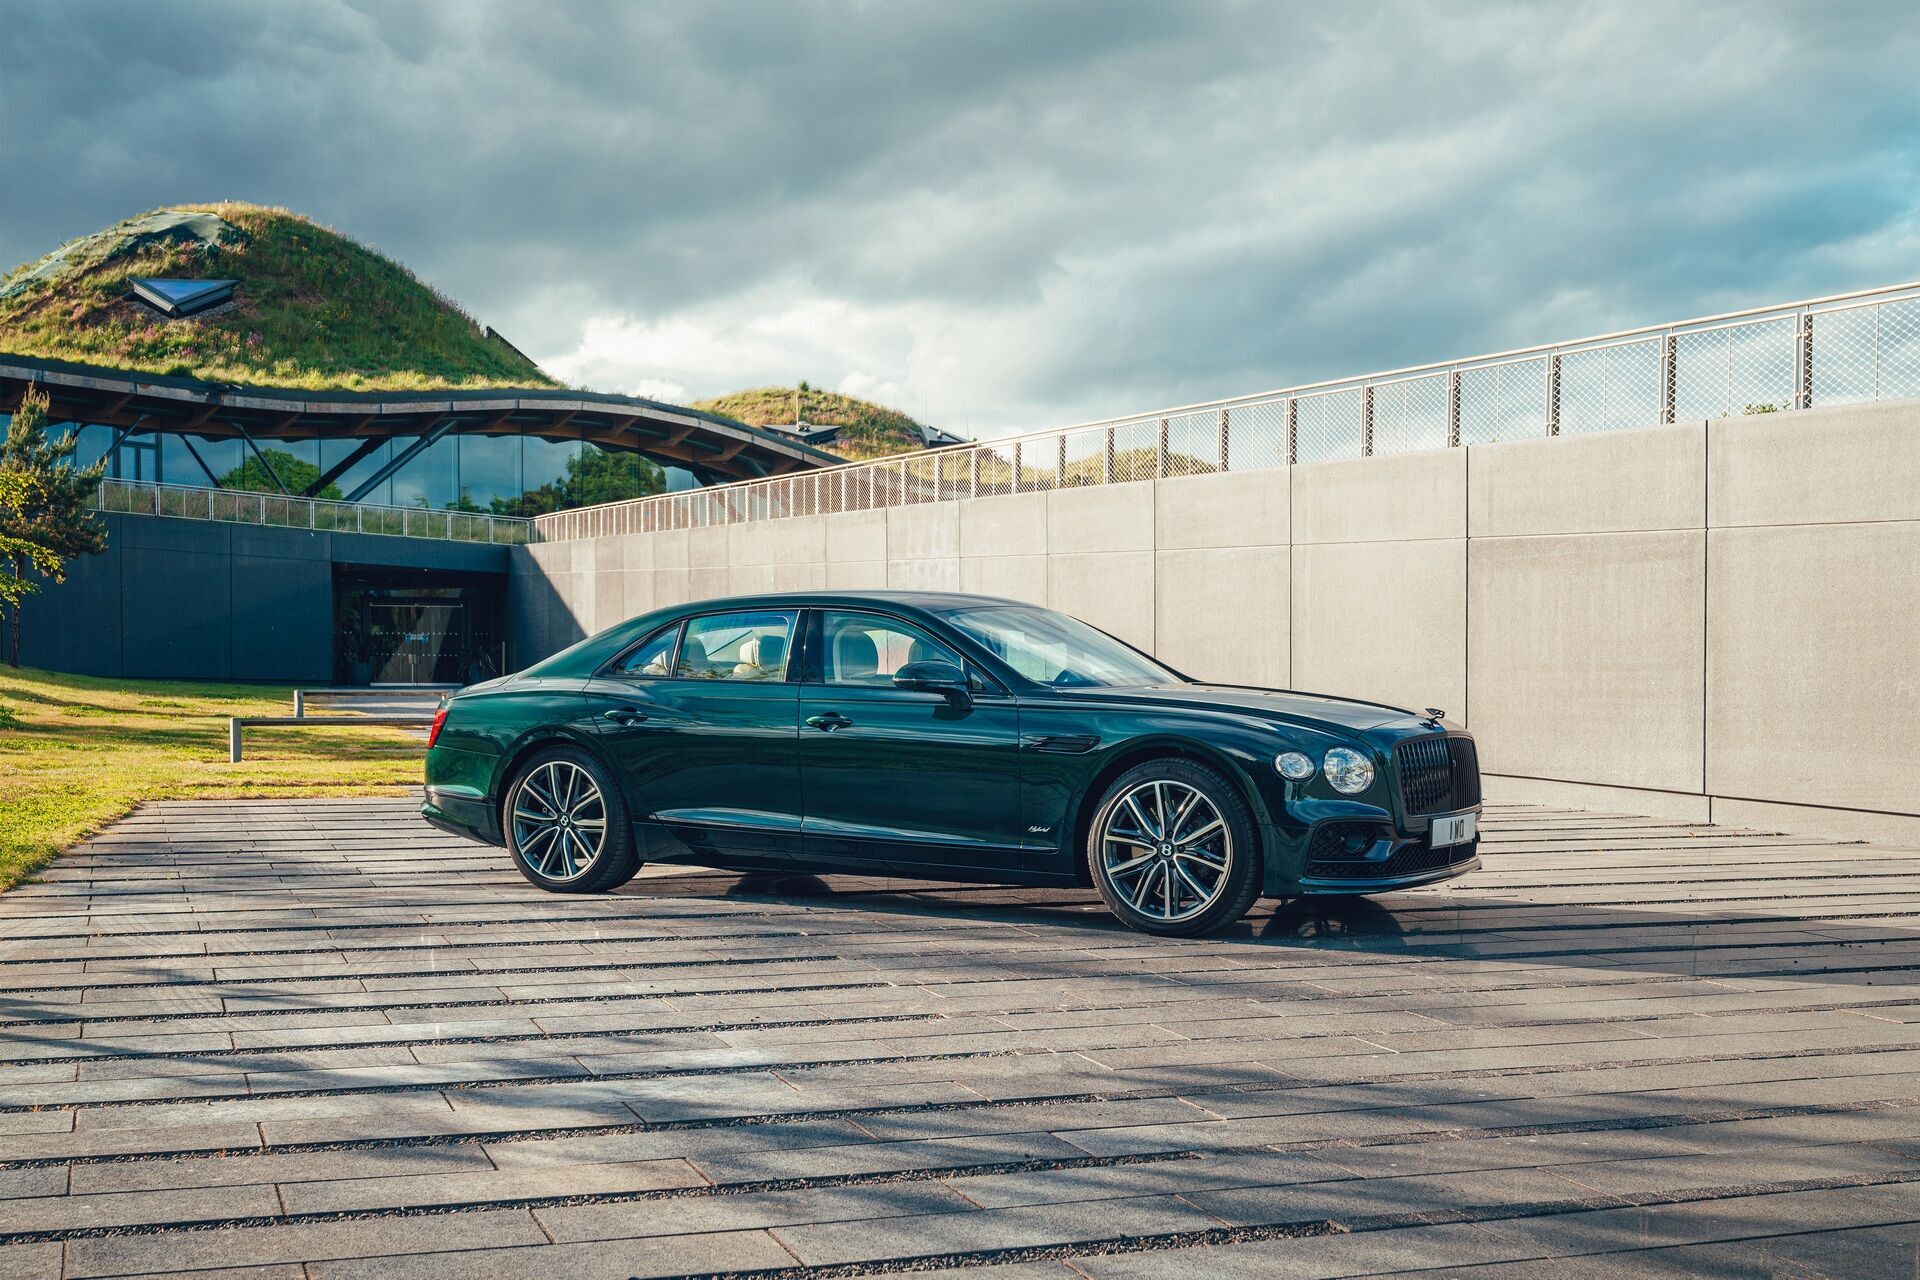 Авто викидає в атмосферу всього 75 г/км CO2, що є абсолютним рекордом для автомобілів марки Bentley